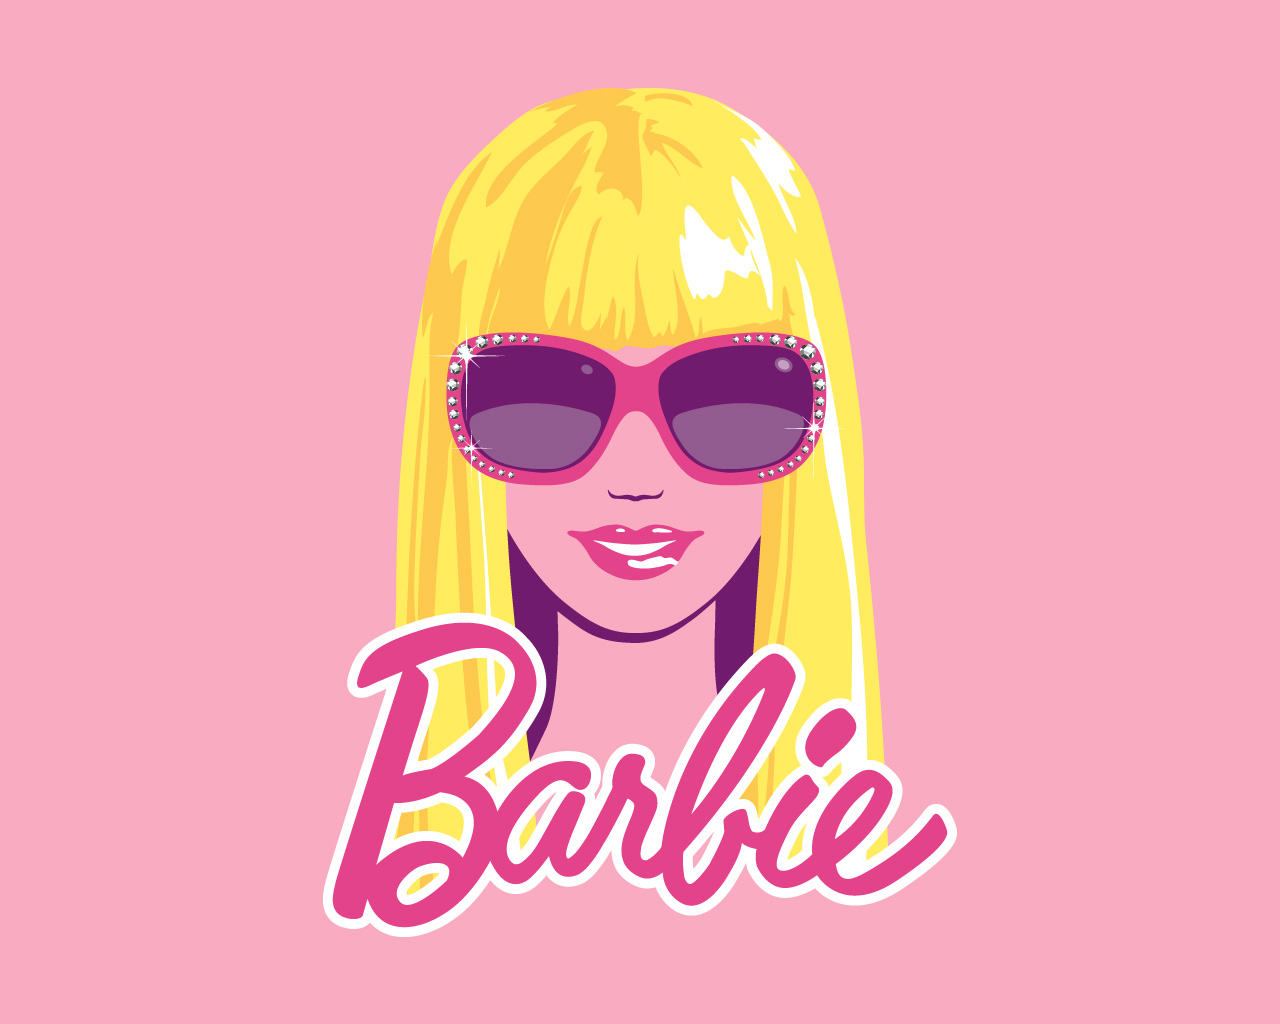 Barbie images Barbie wallpaper photos 31795197